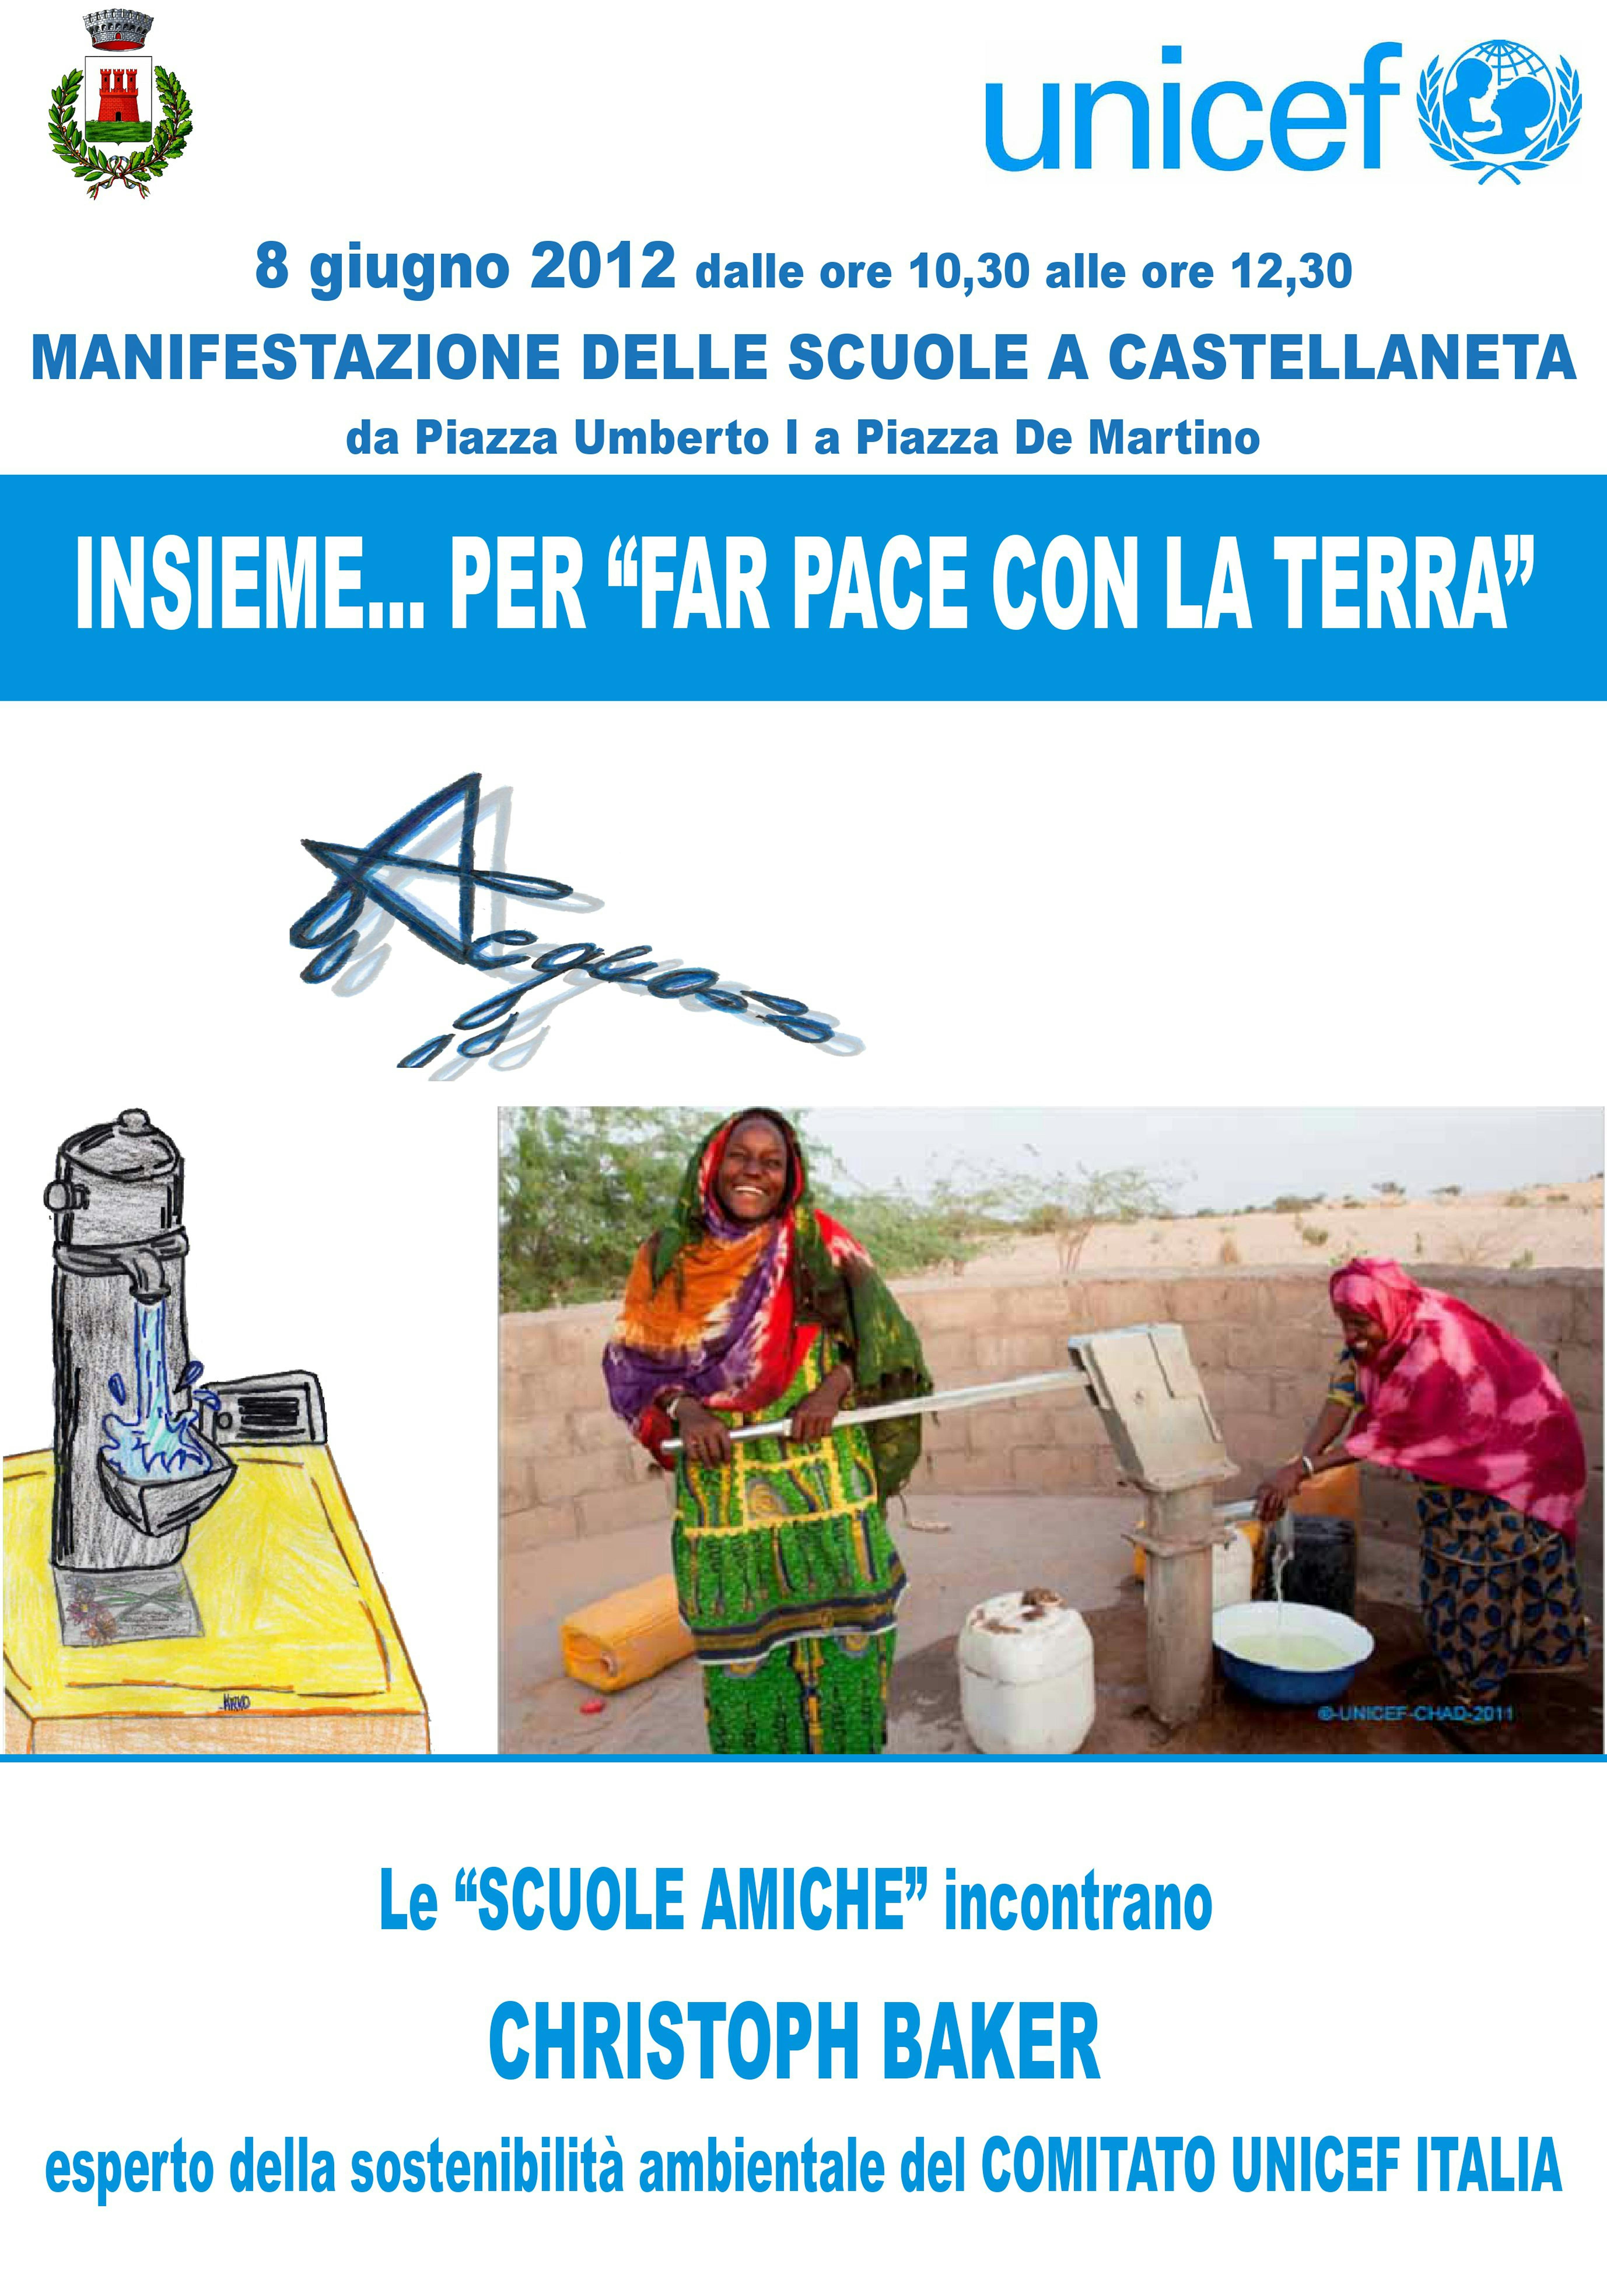 A Taranto una giornata speciale dedicata alle scuole